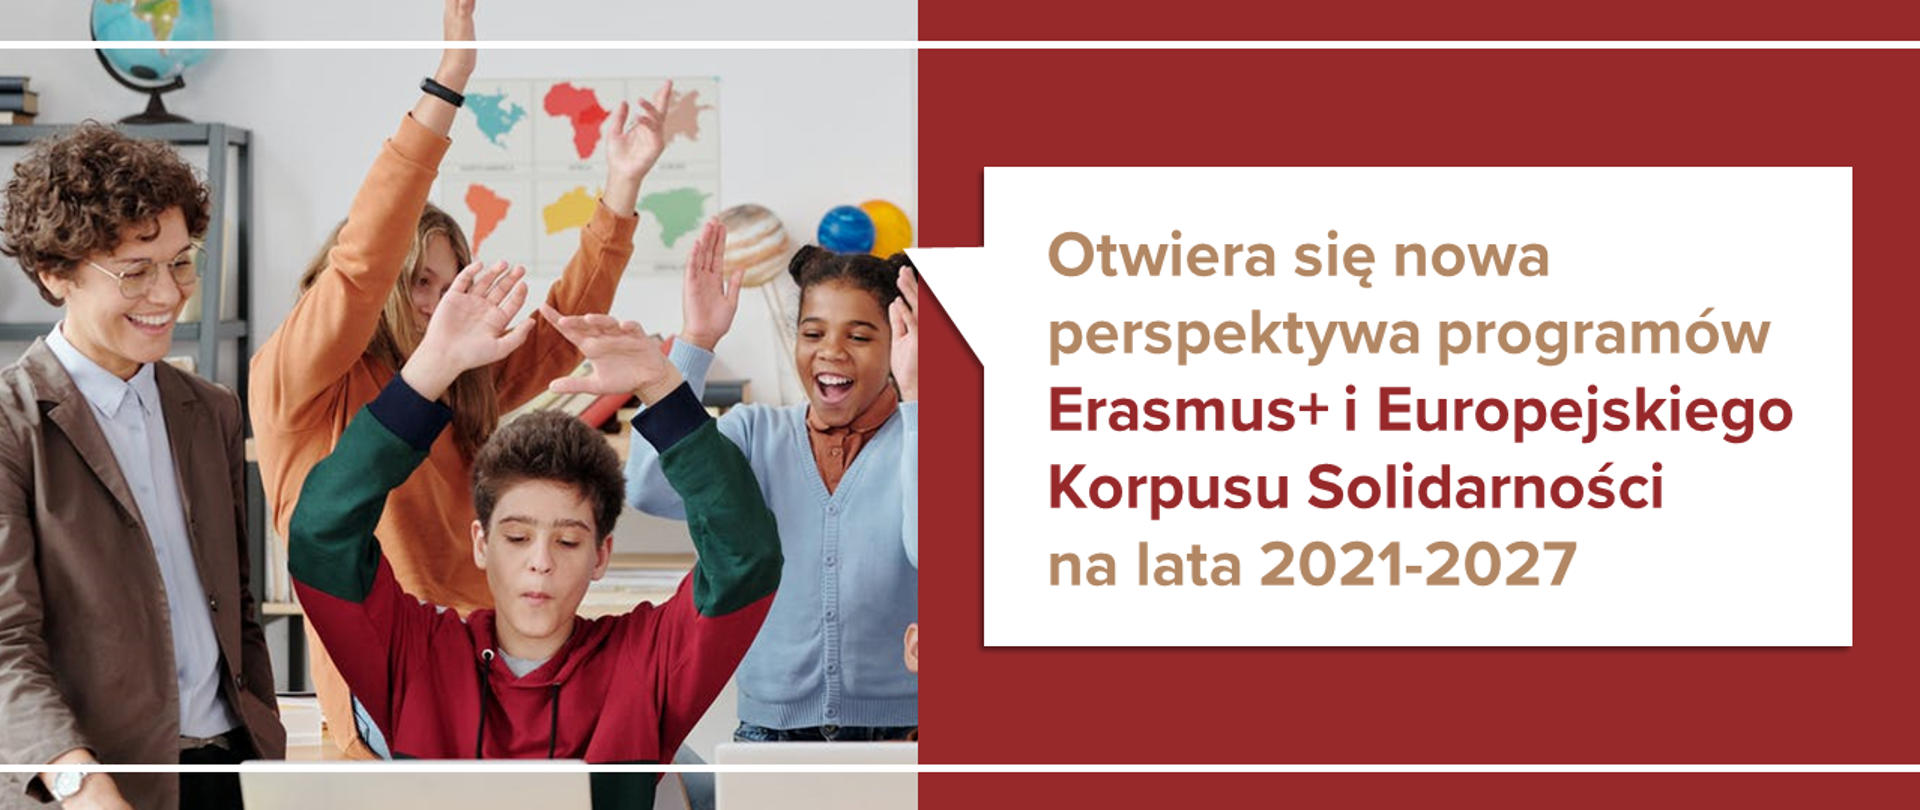 Ciesząca się młodzież z podniesionymi rękami, obok kwadratowy dymek z tekstem: "Otwiera się nowa perspektywa programów Erasmus+ i Europejskiego Korpusu Solidarności na lata 2021-2027"